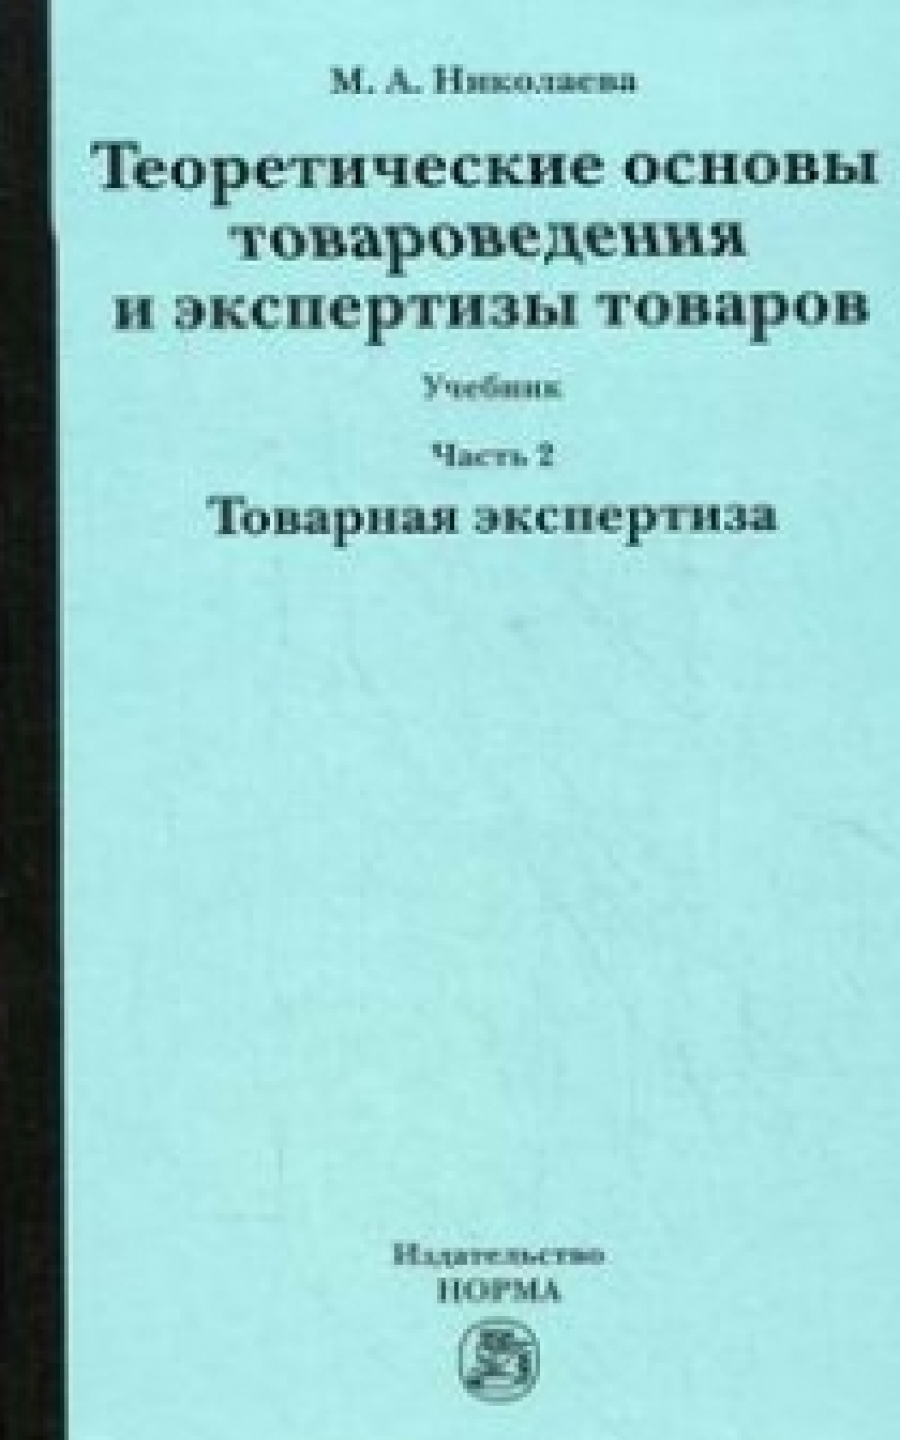 Николаева М.А. - Теоретические основы товароведения и экспертизы товаров В 2 ч.: Ч. 2: Модуль II. Товарная экспертиза